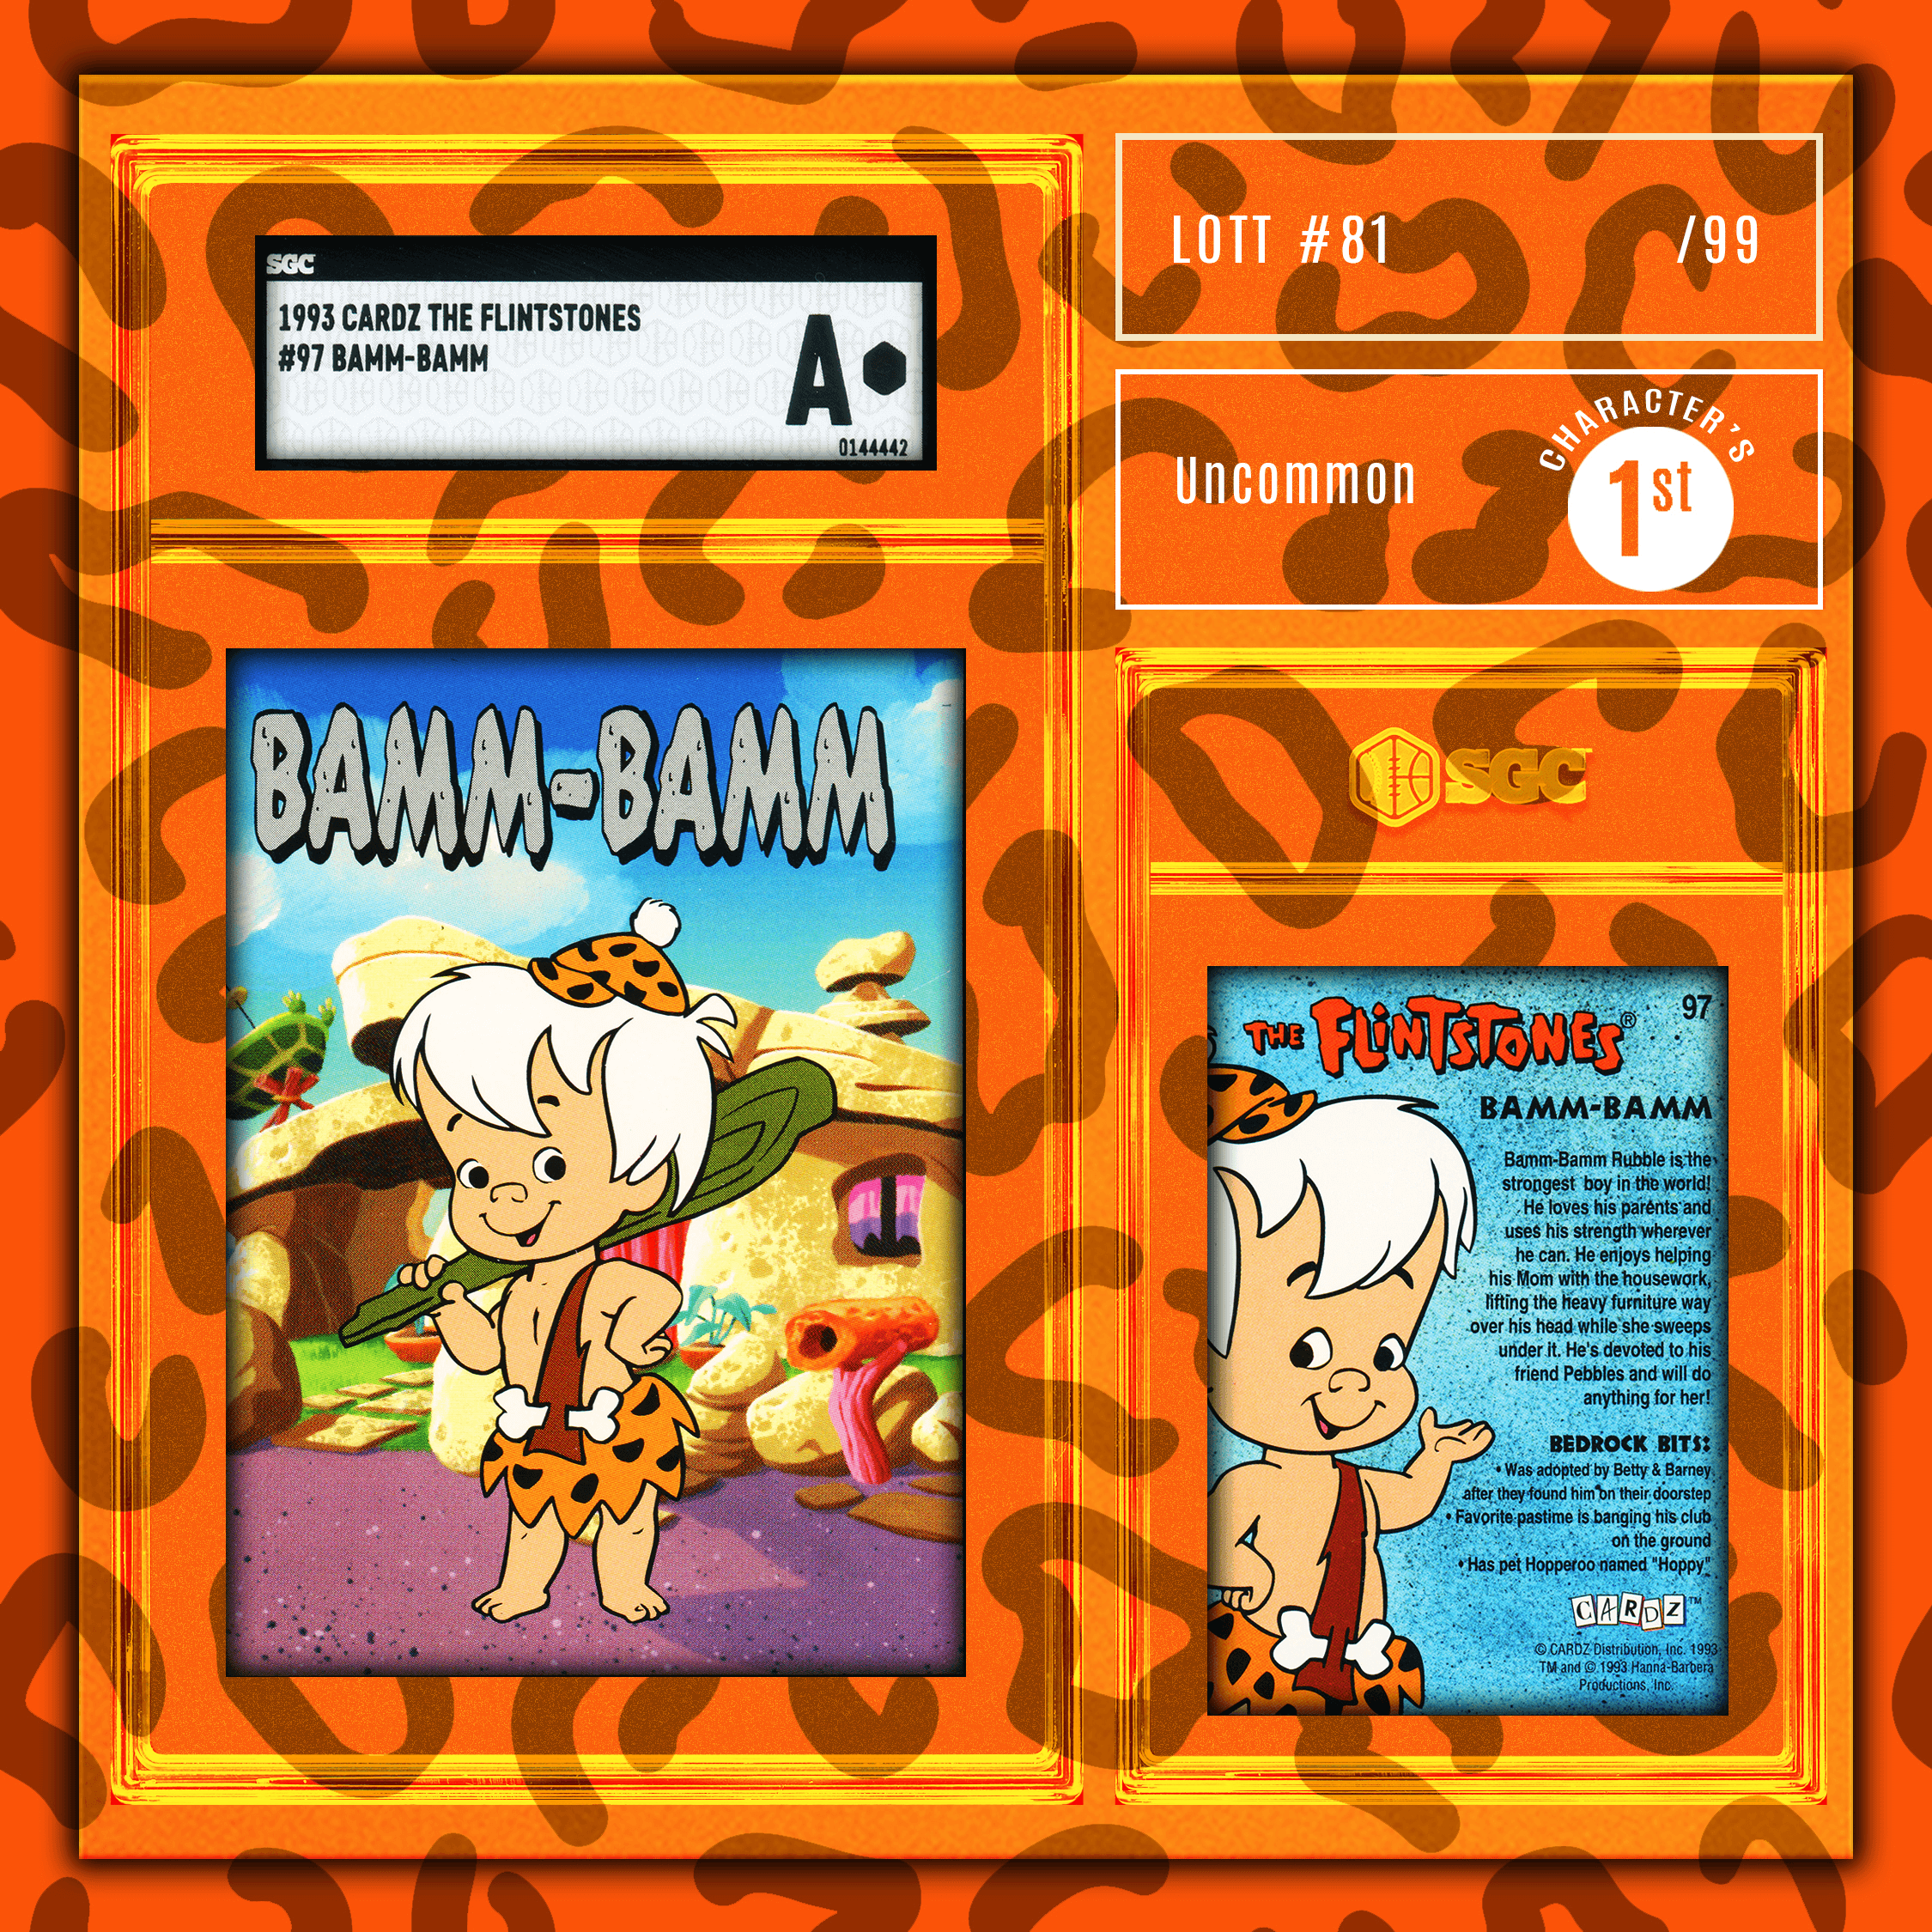 Bamm-Bamm - (1993 Cardz - The Flintstones SGC A)